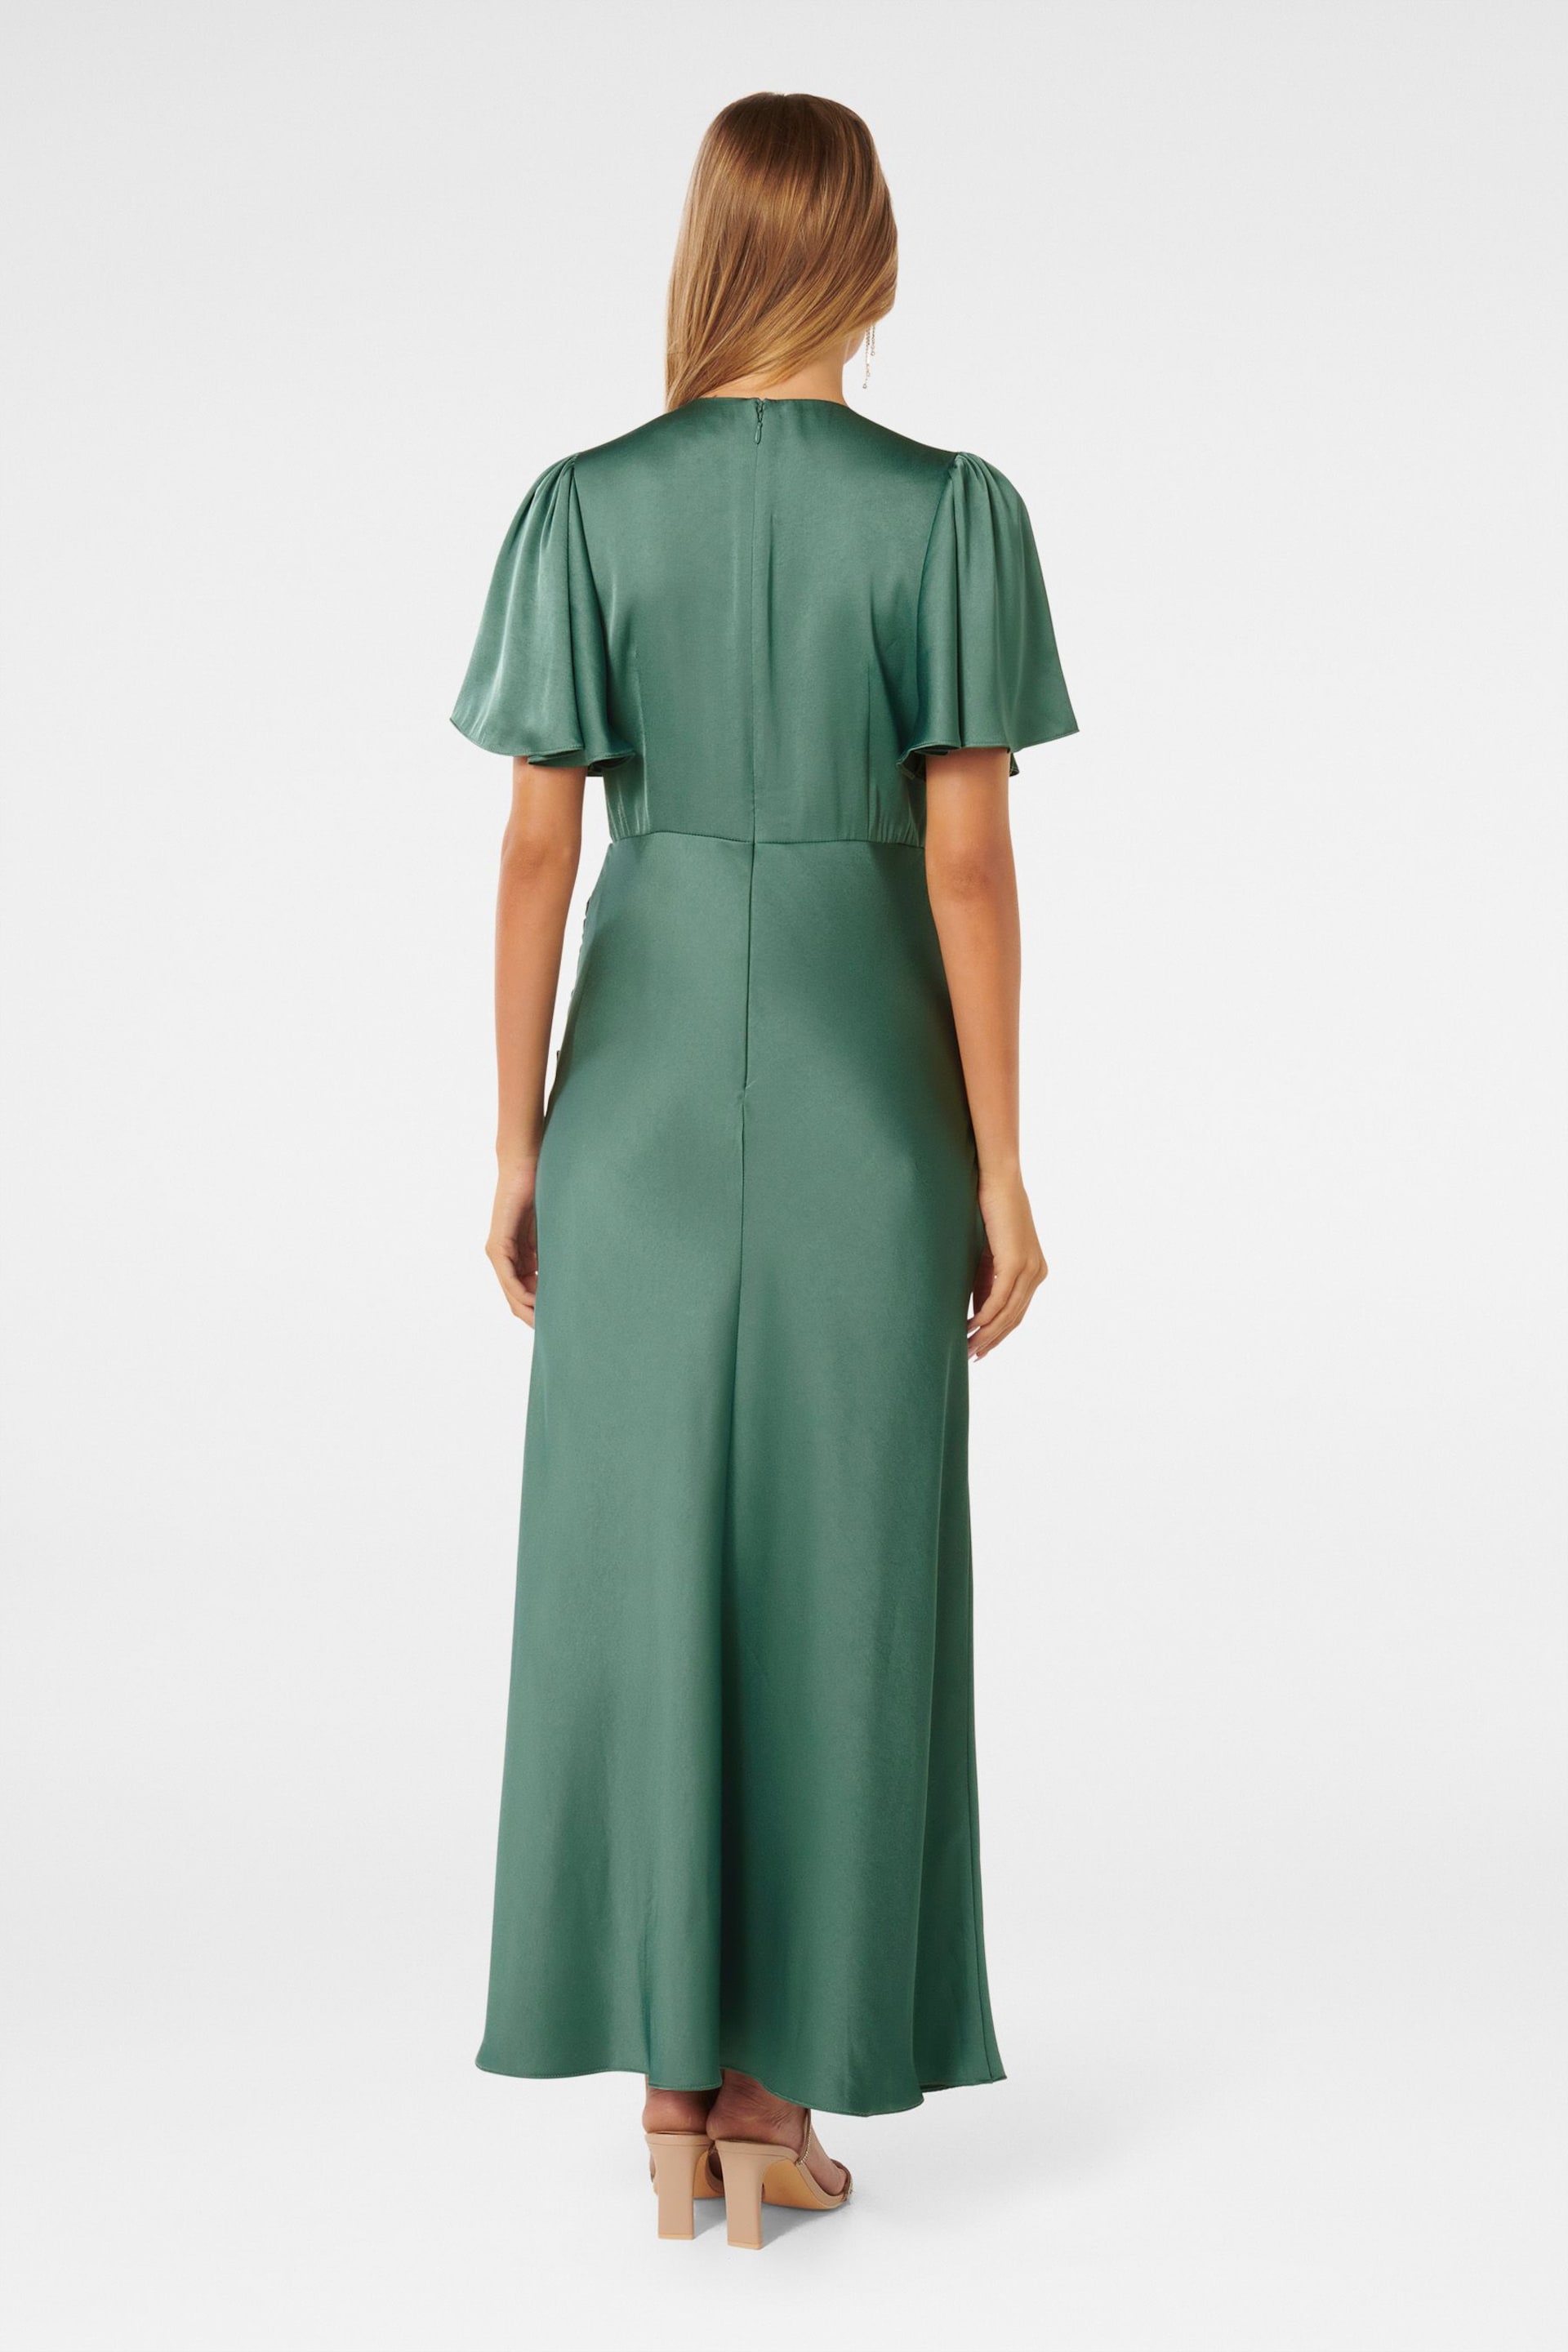 Forever New Green Chelsea Flutter Sleeve Satin Maxi Dress - Image 4 of 4